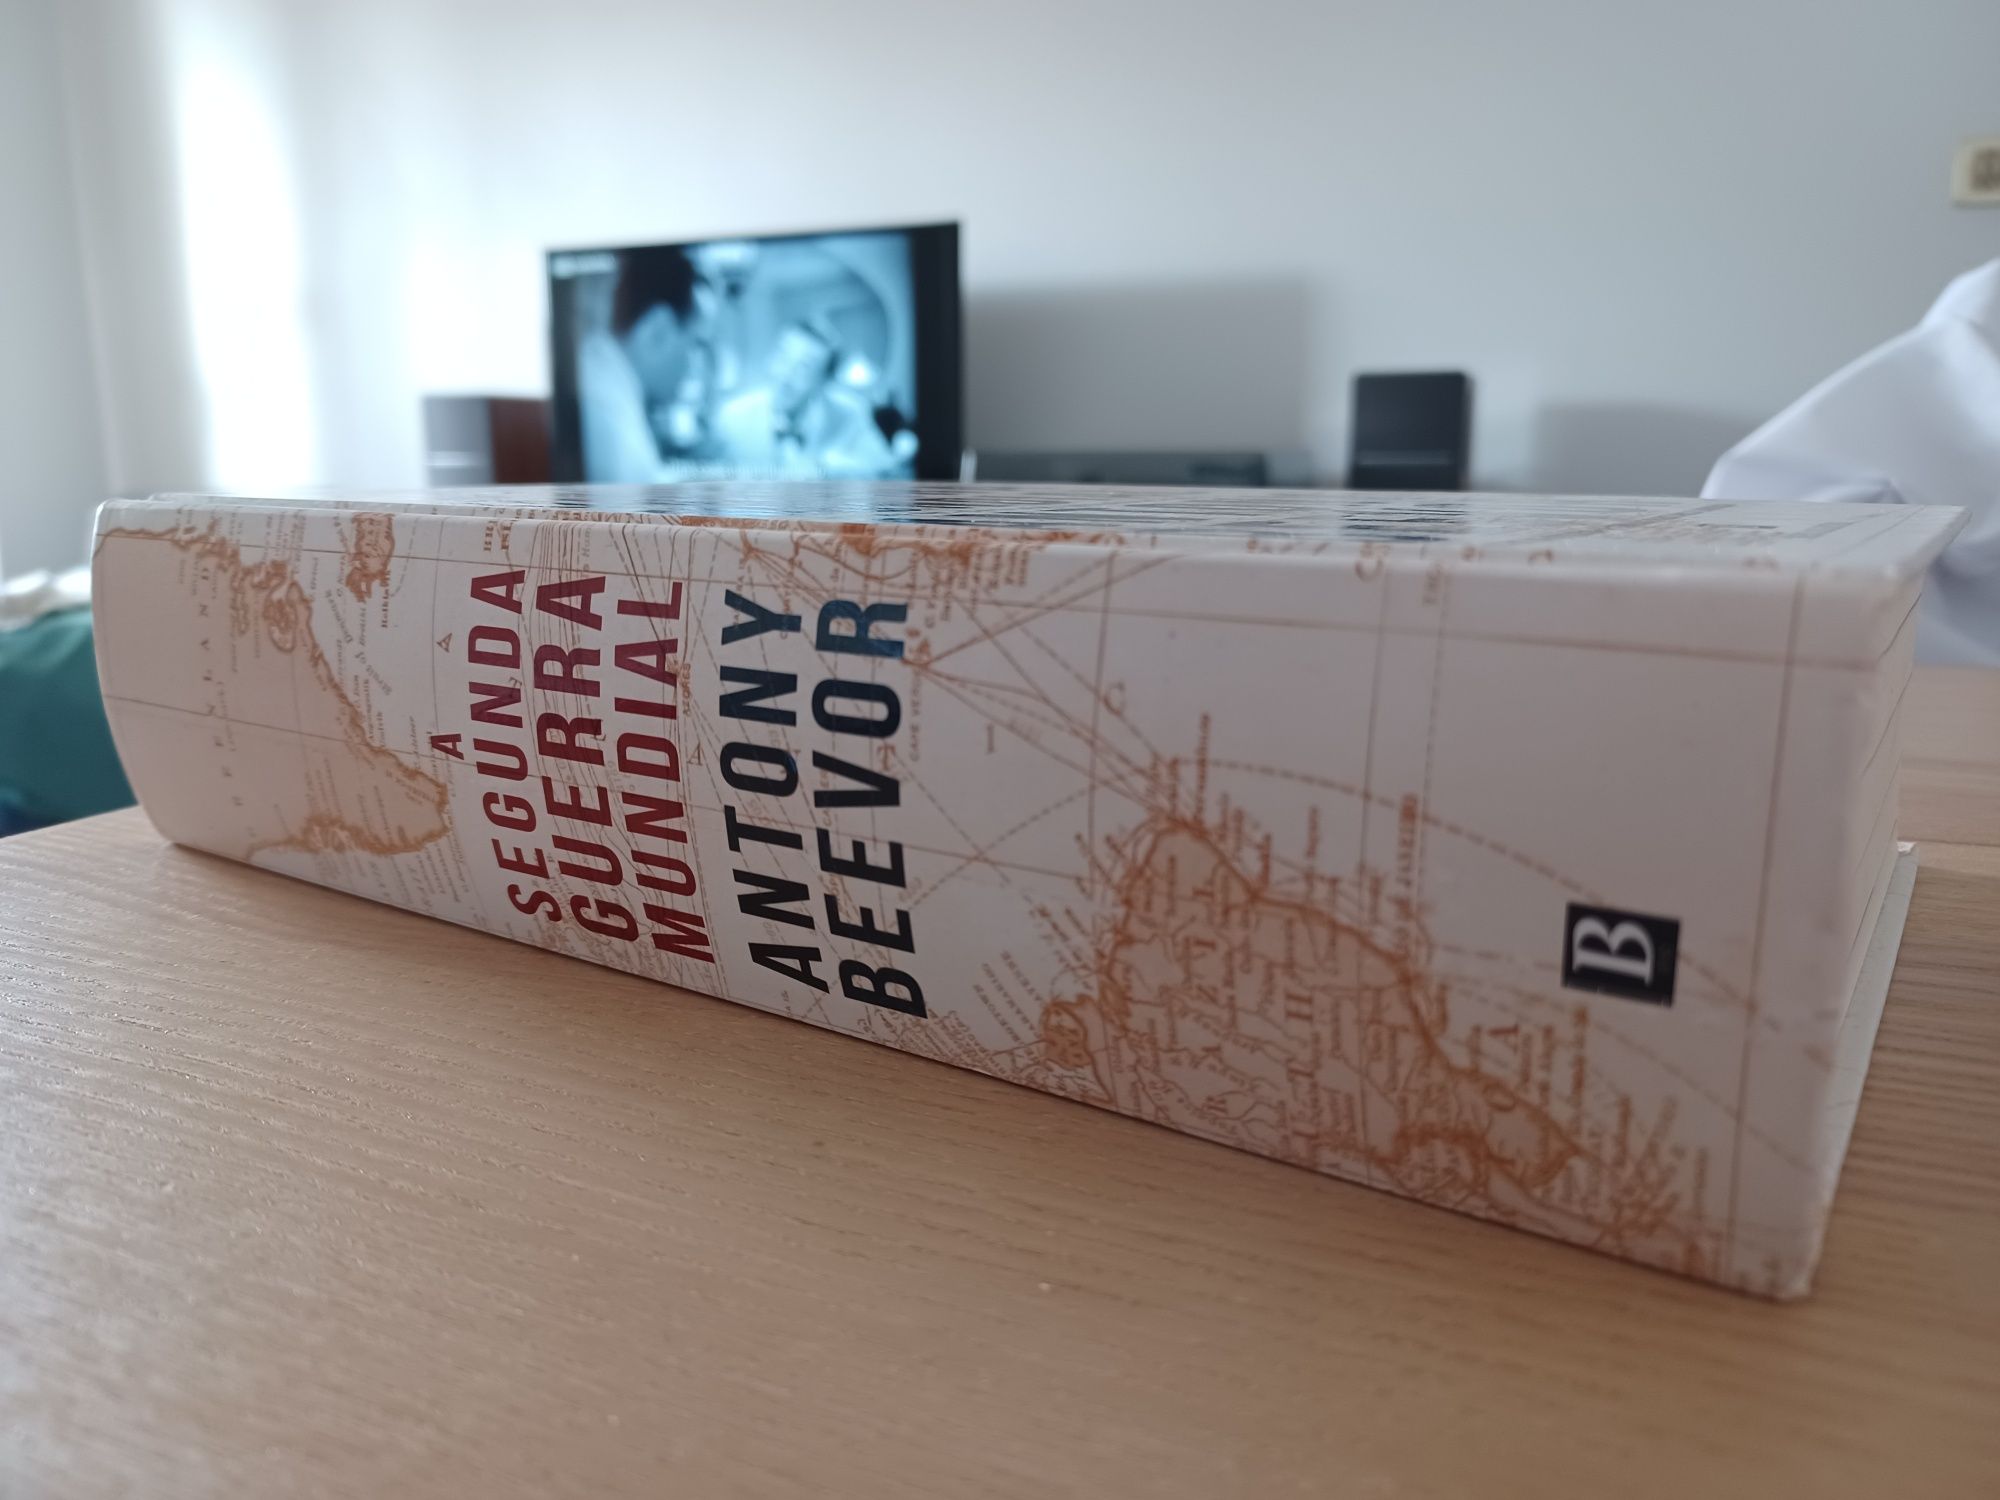 Livro "A Segunda Guerra Mundial" de Antony Beevor - novo (Bertrand Ed)